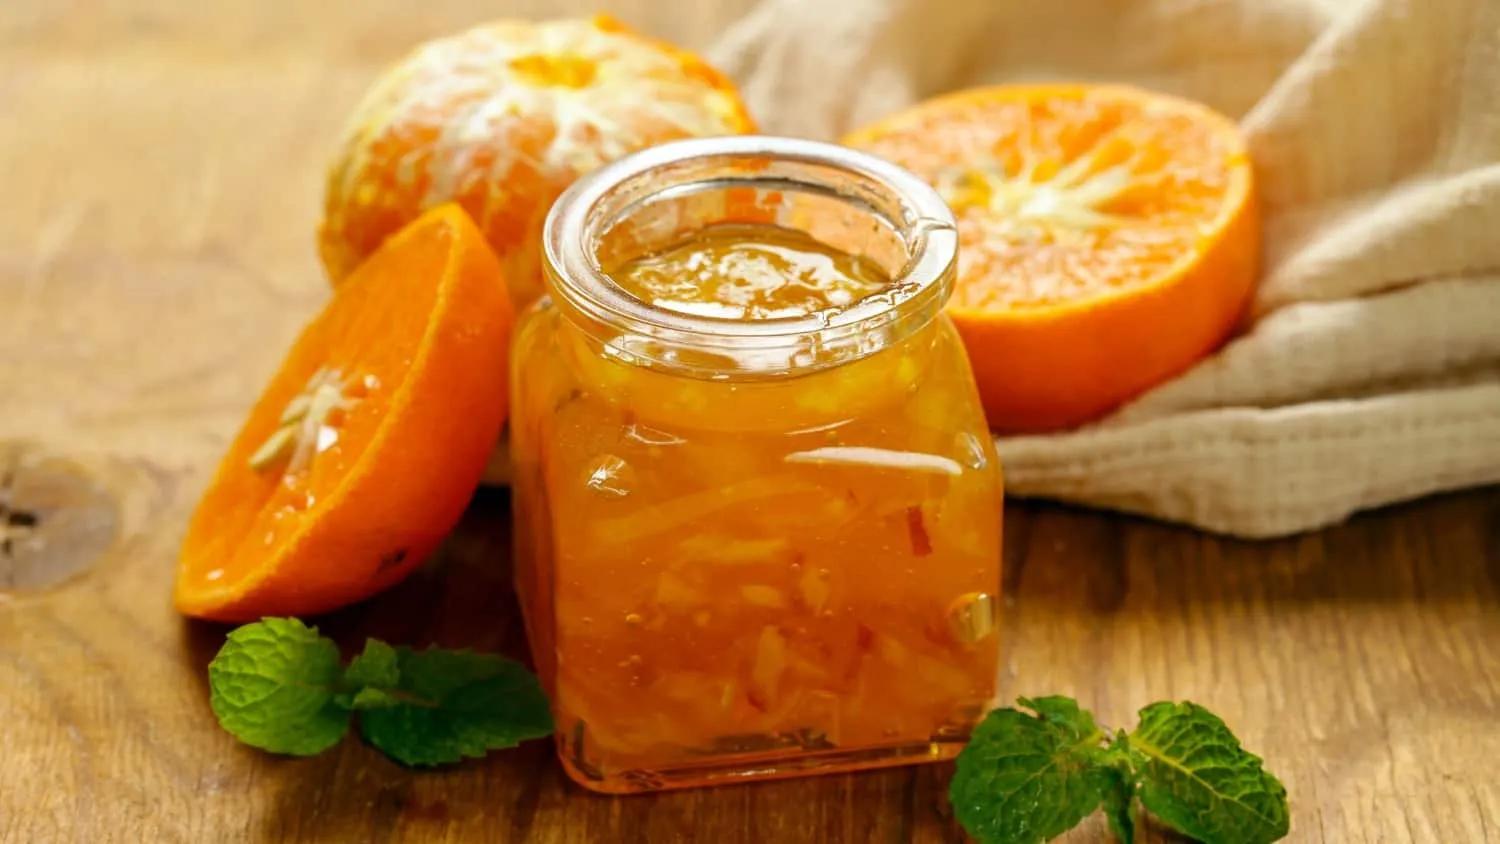 Homemade Marmalade Gift for the Holidays (RECIPE) | LaptrinhX / News